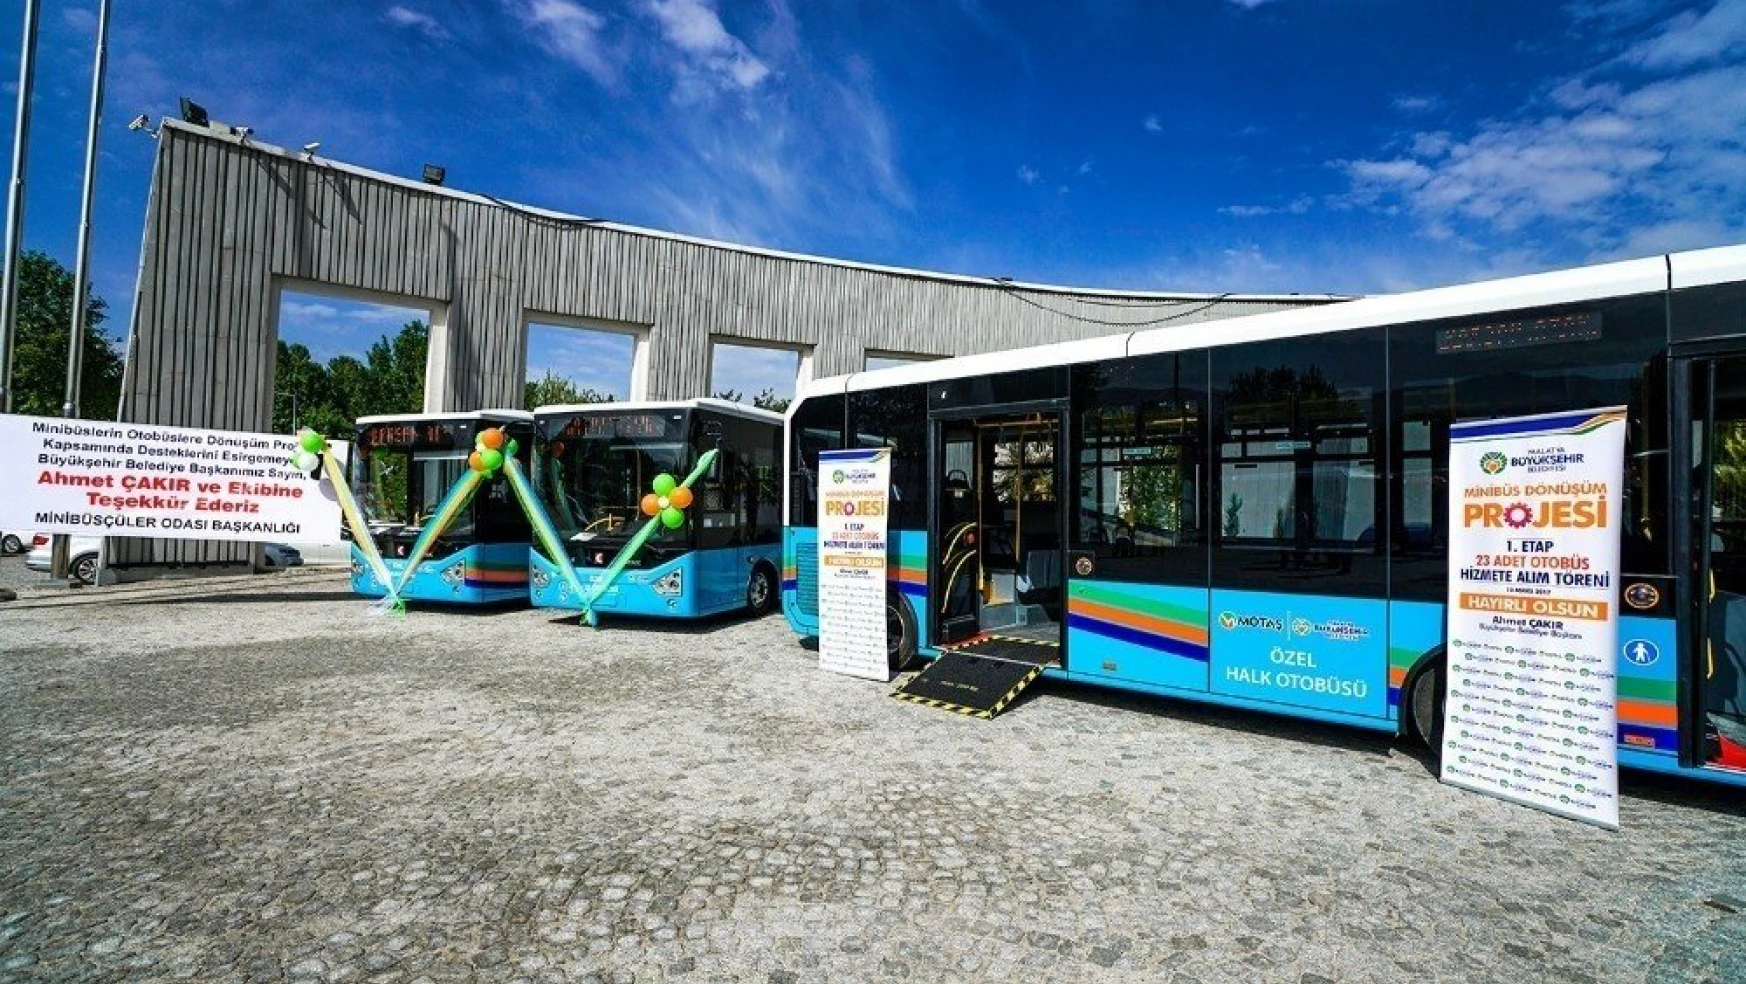 Şehiriçi minibüsler özel halk otobüsüne dönüşüyor
